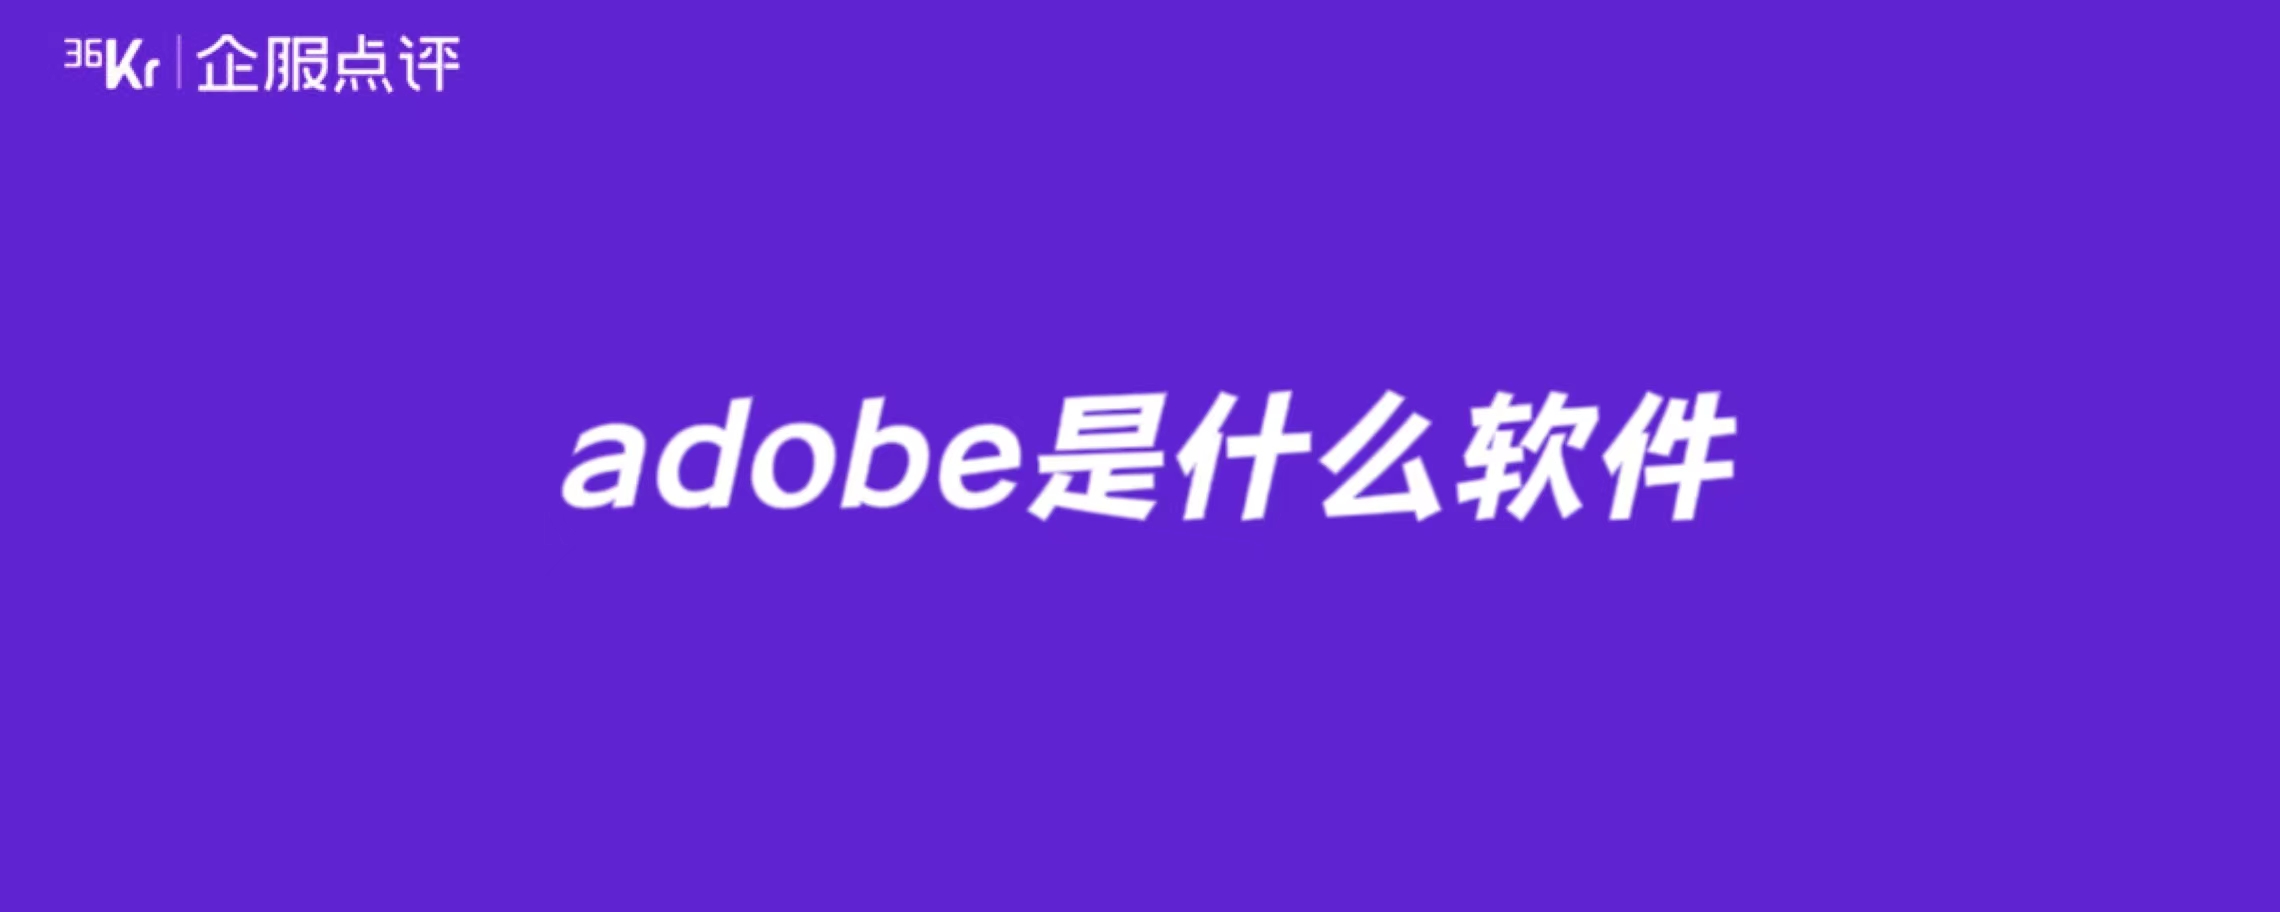 adobe是什么软件